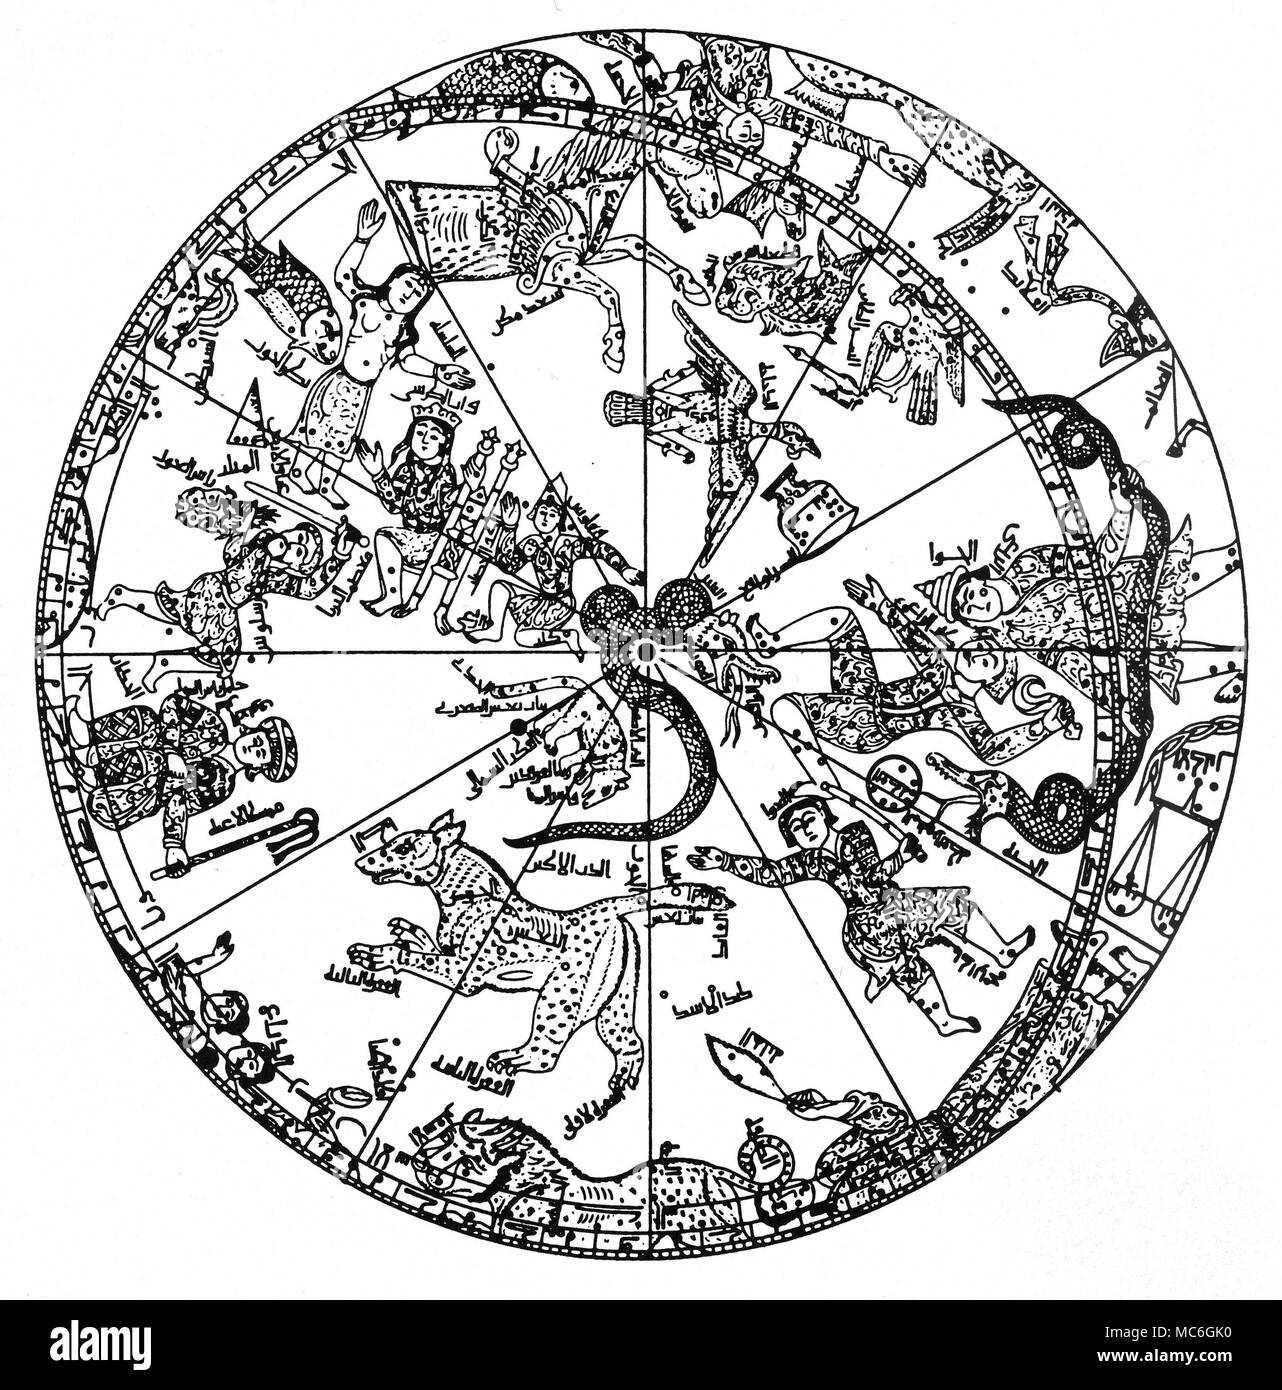 Astrologie - Sternbilder arabische Konstellation Karte des nördlichen Himmel. Lithographie aus dem 19. Jahrhundert. Stockfoto